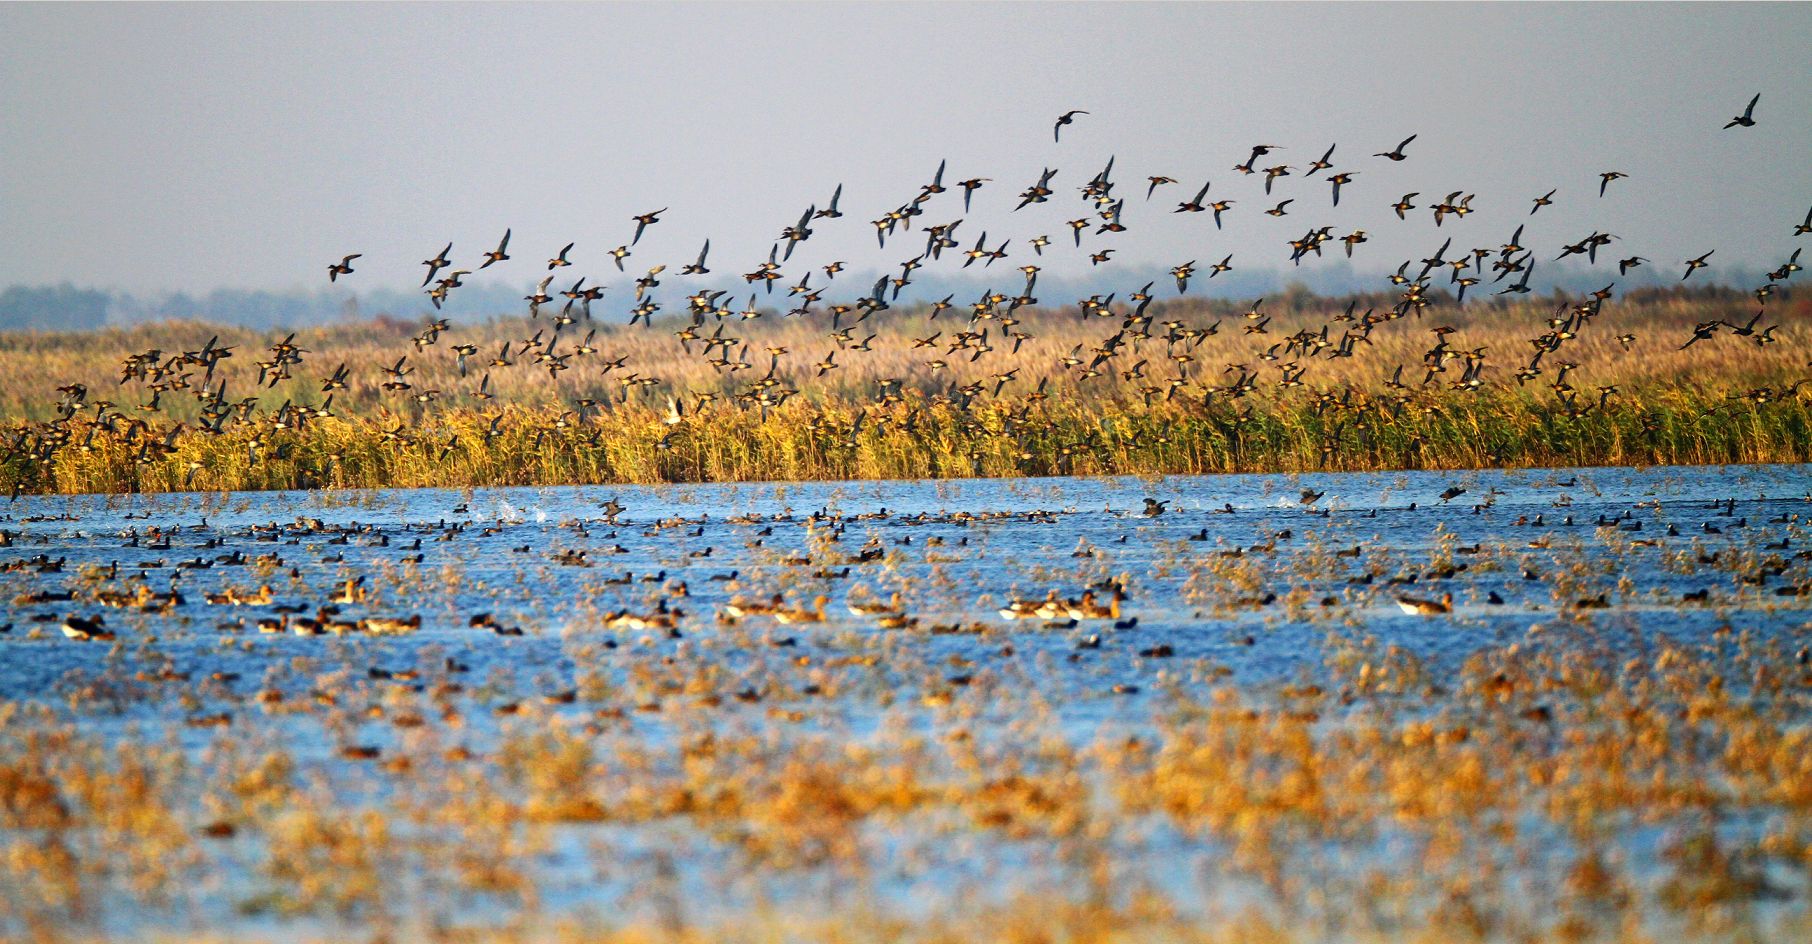 北大港湿地召开2020年秋冬季野生动物保护工作会议 - 救护中心 - 天津北大港湿地管理中心网站